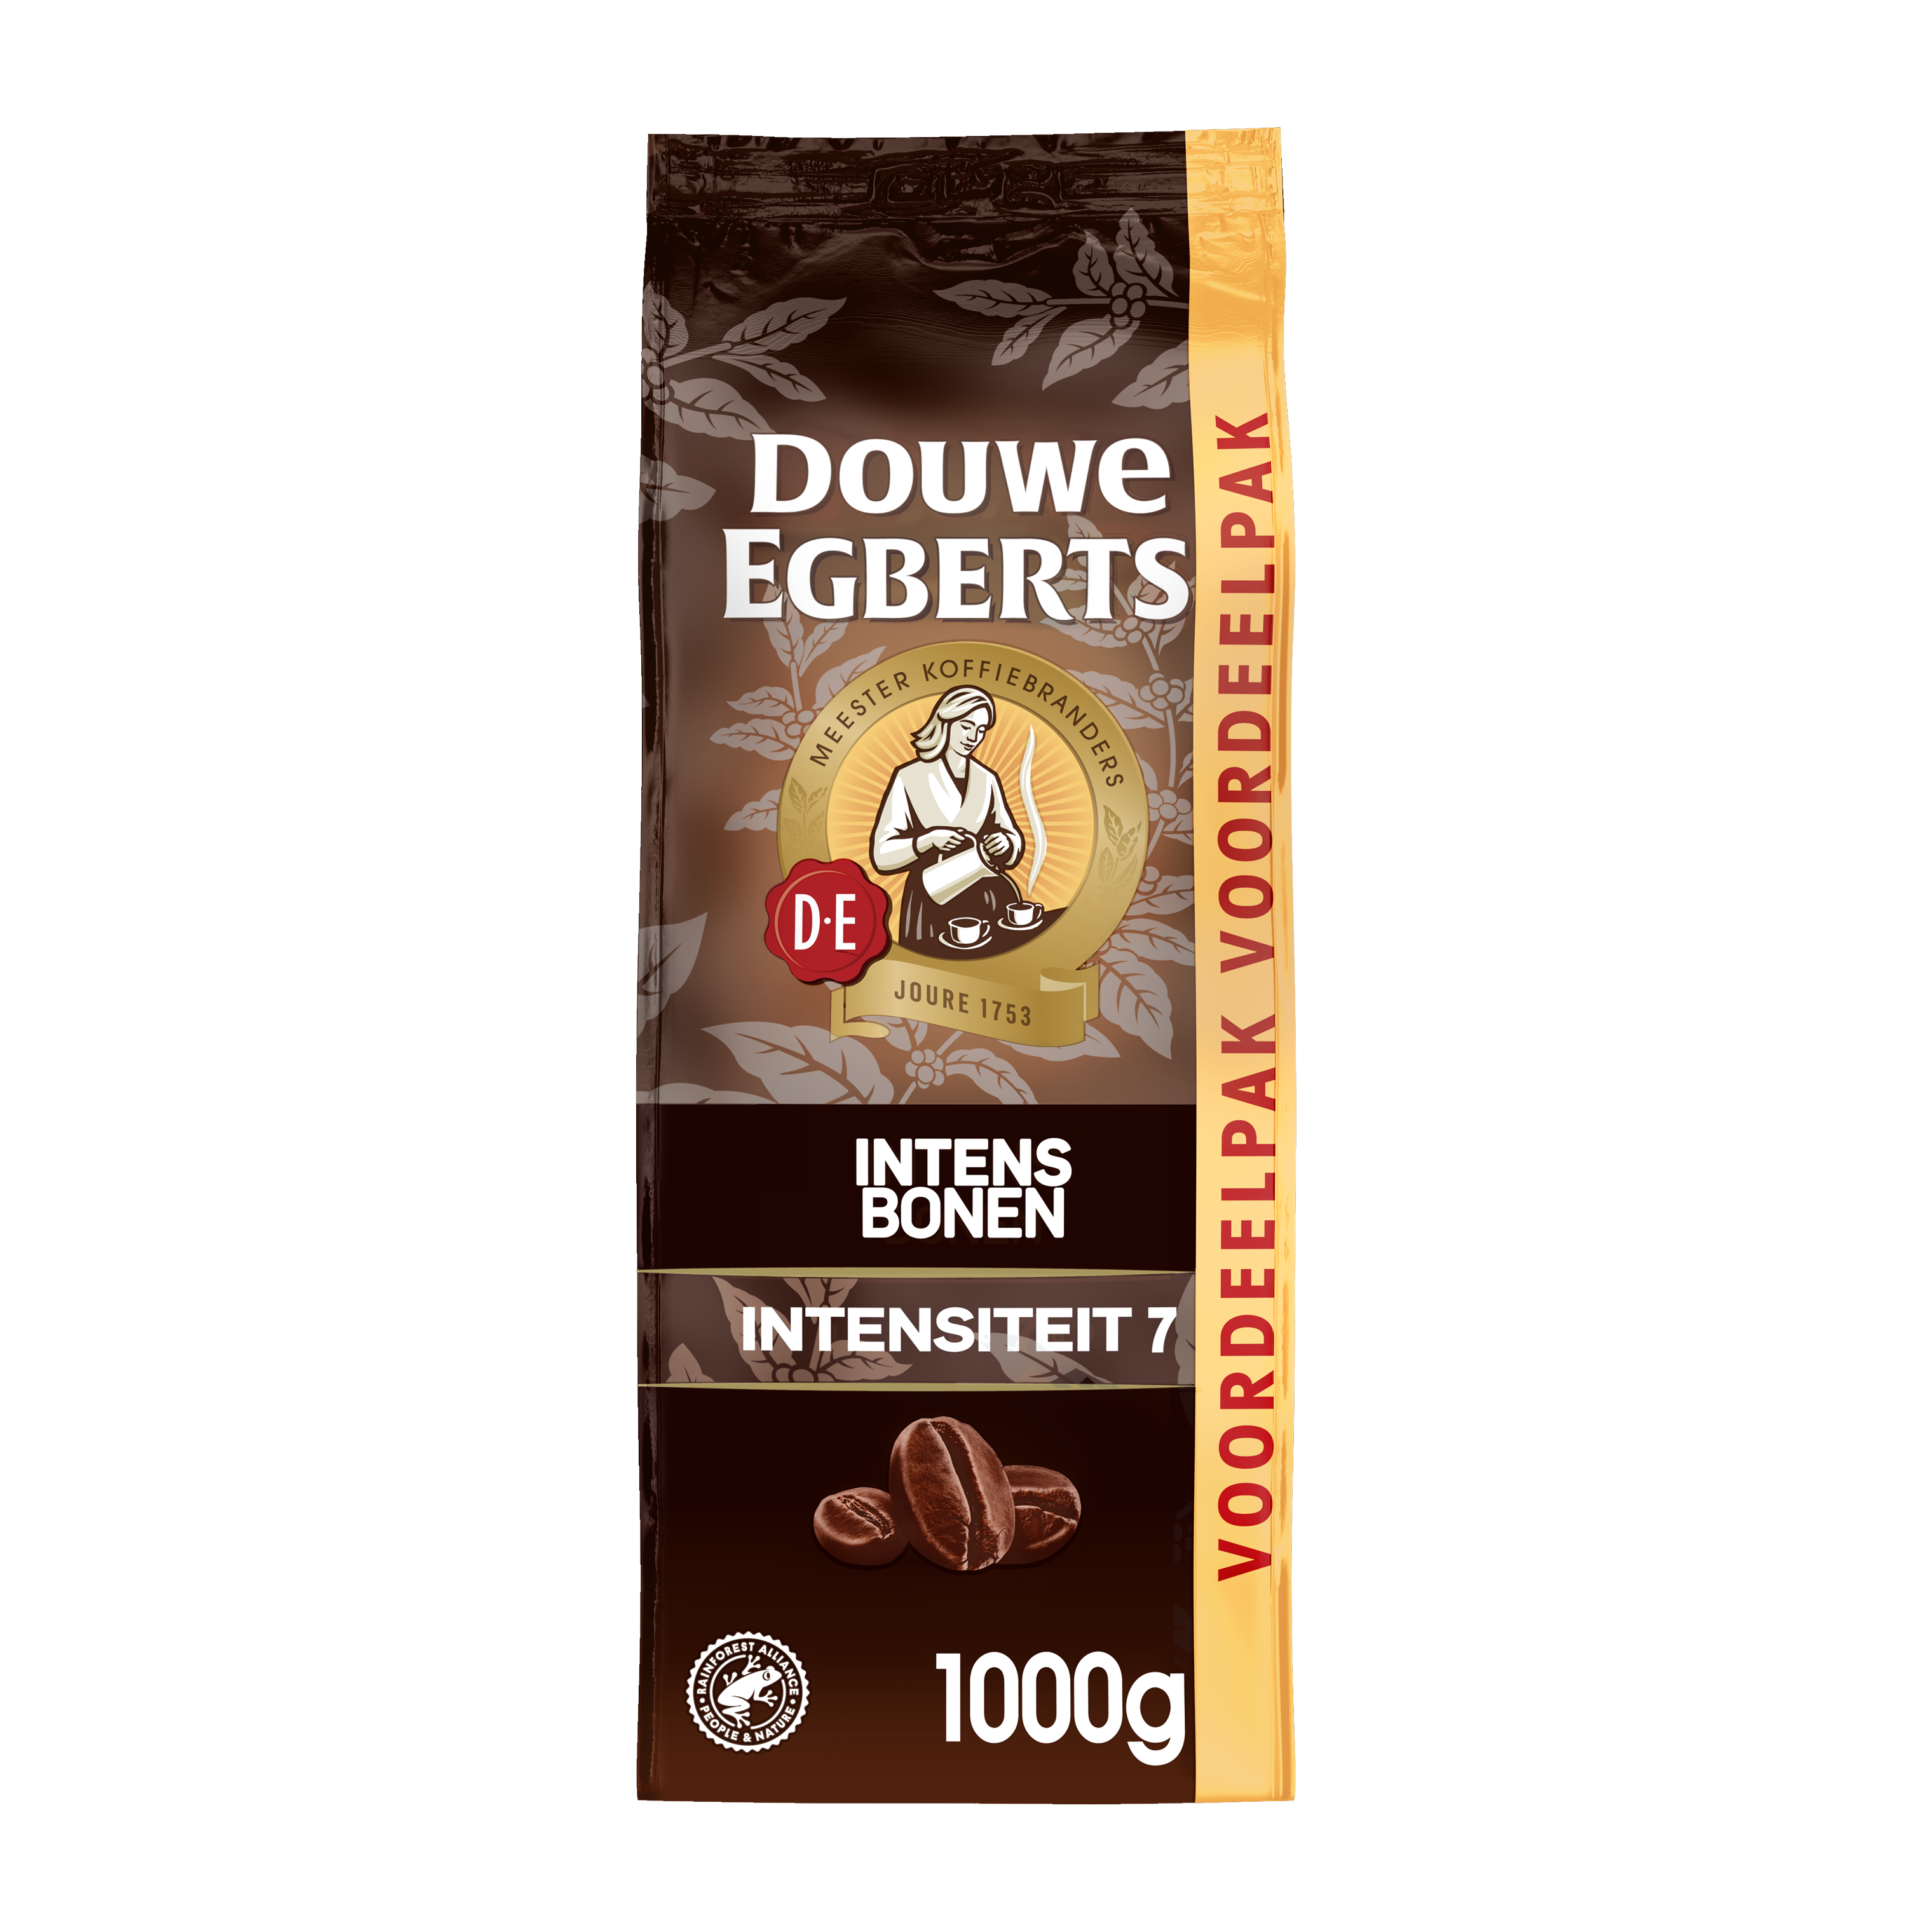 Aanbieding Douwe Egberts Intens - koffiebonen 1kg (ean 8711000708620)